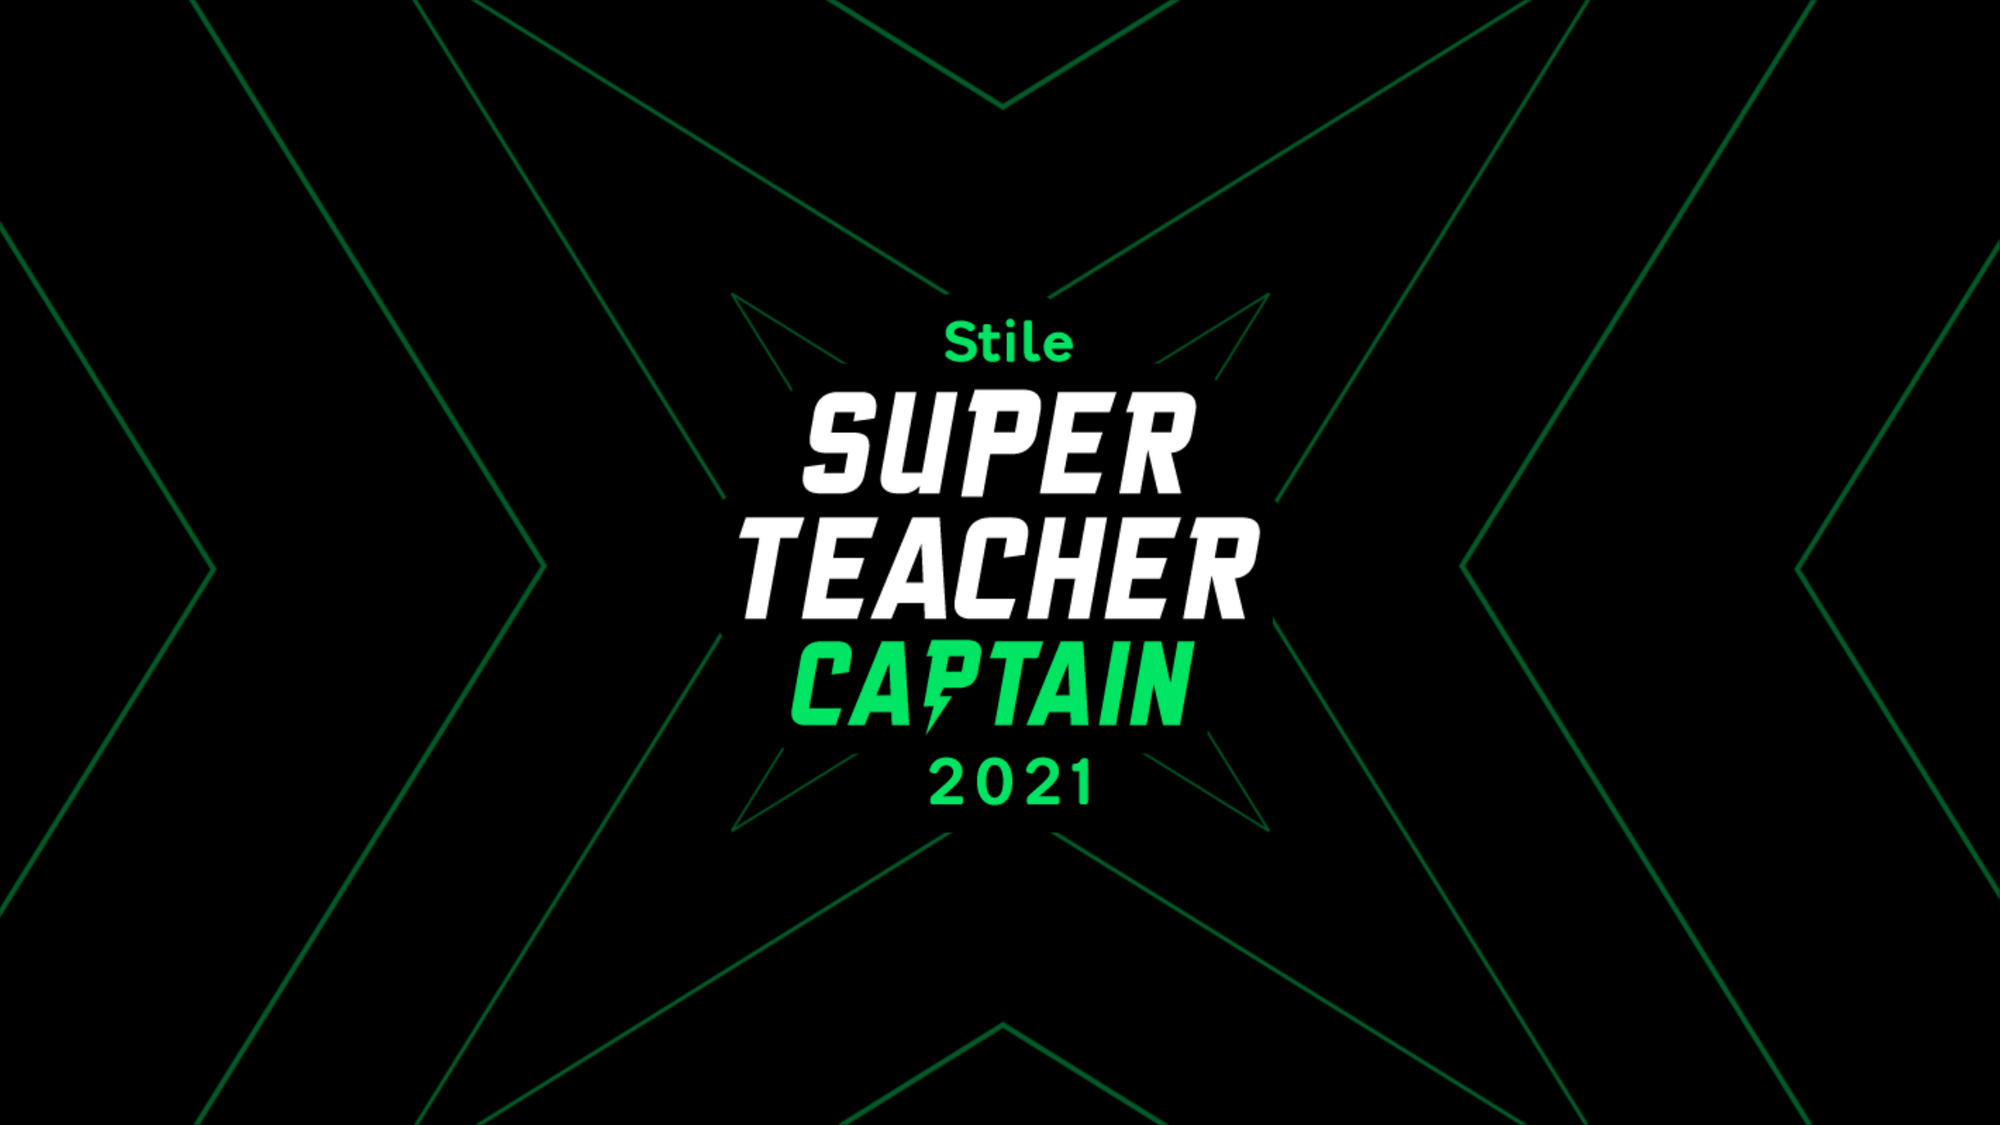 Stile Super Teacher Challenge 2021: Captain Missions